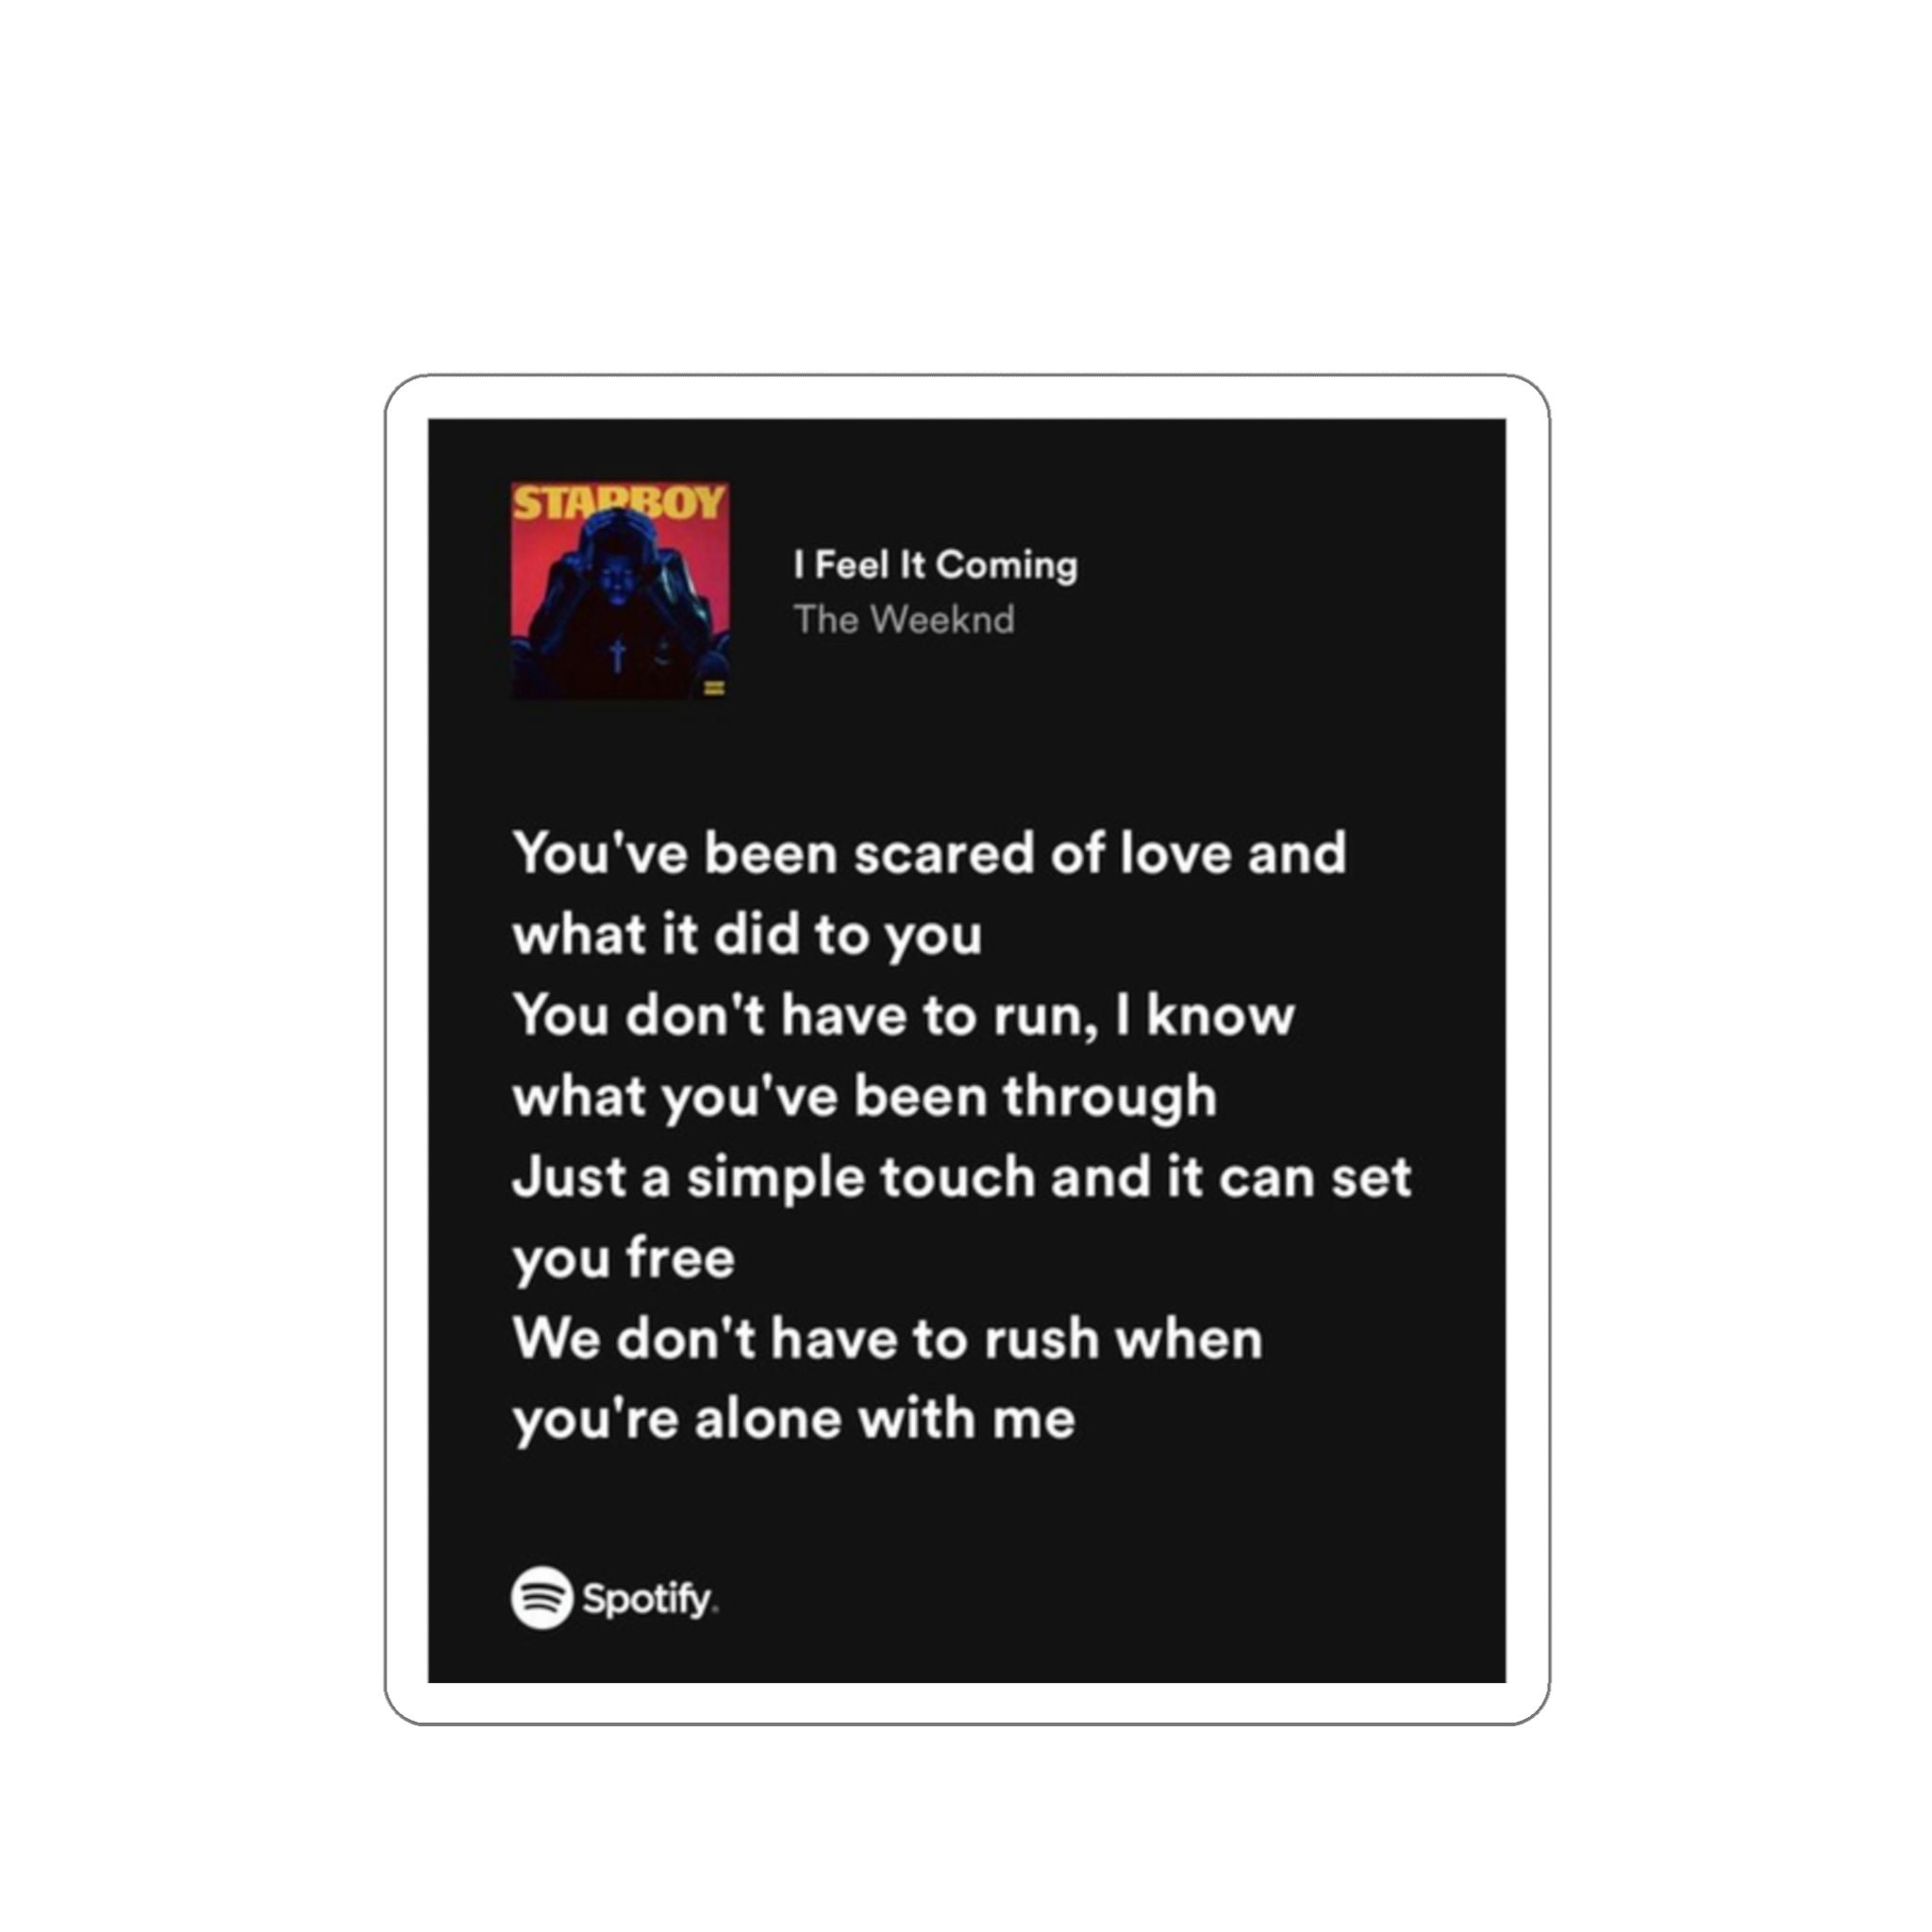 Earned it - The Weeknd  Lyrics aesthetic, Song lyrics wallpaper, Pretty  lyrics